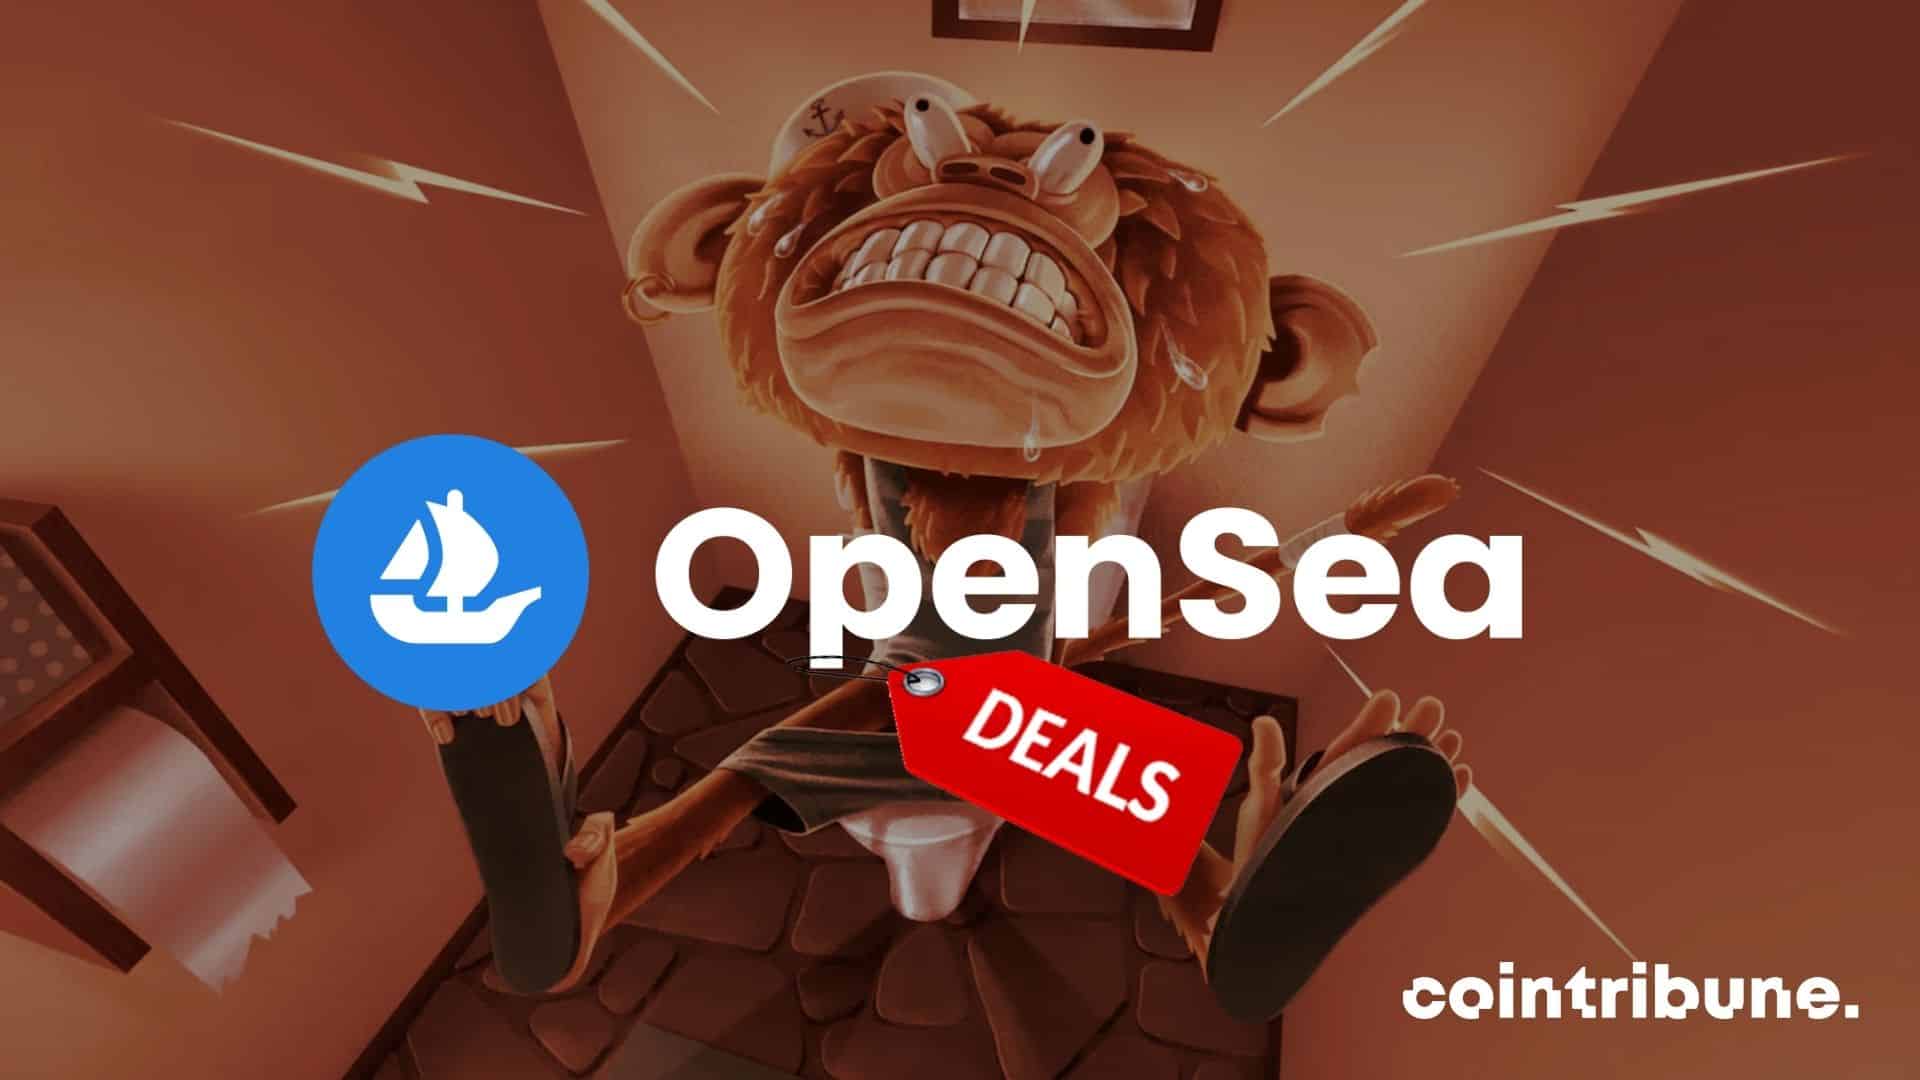 opensea deals